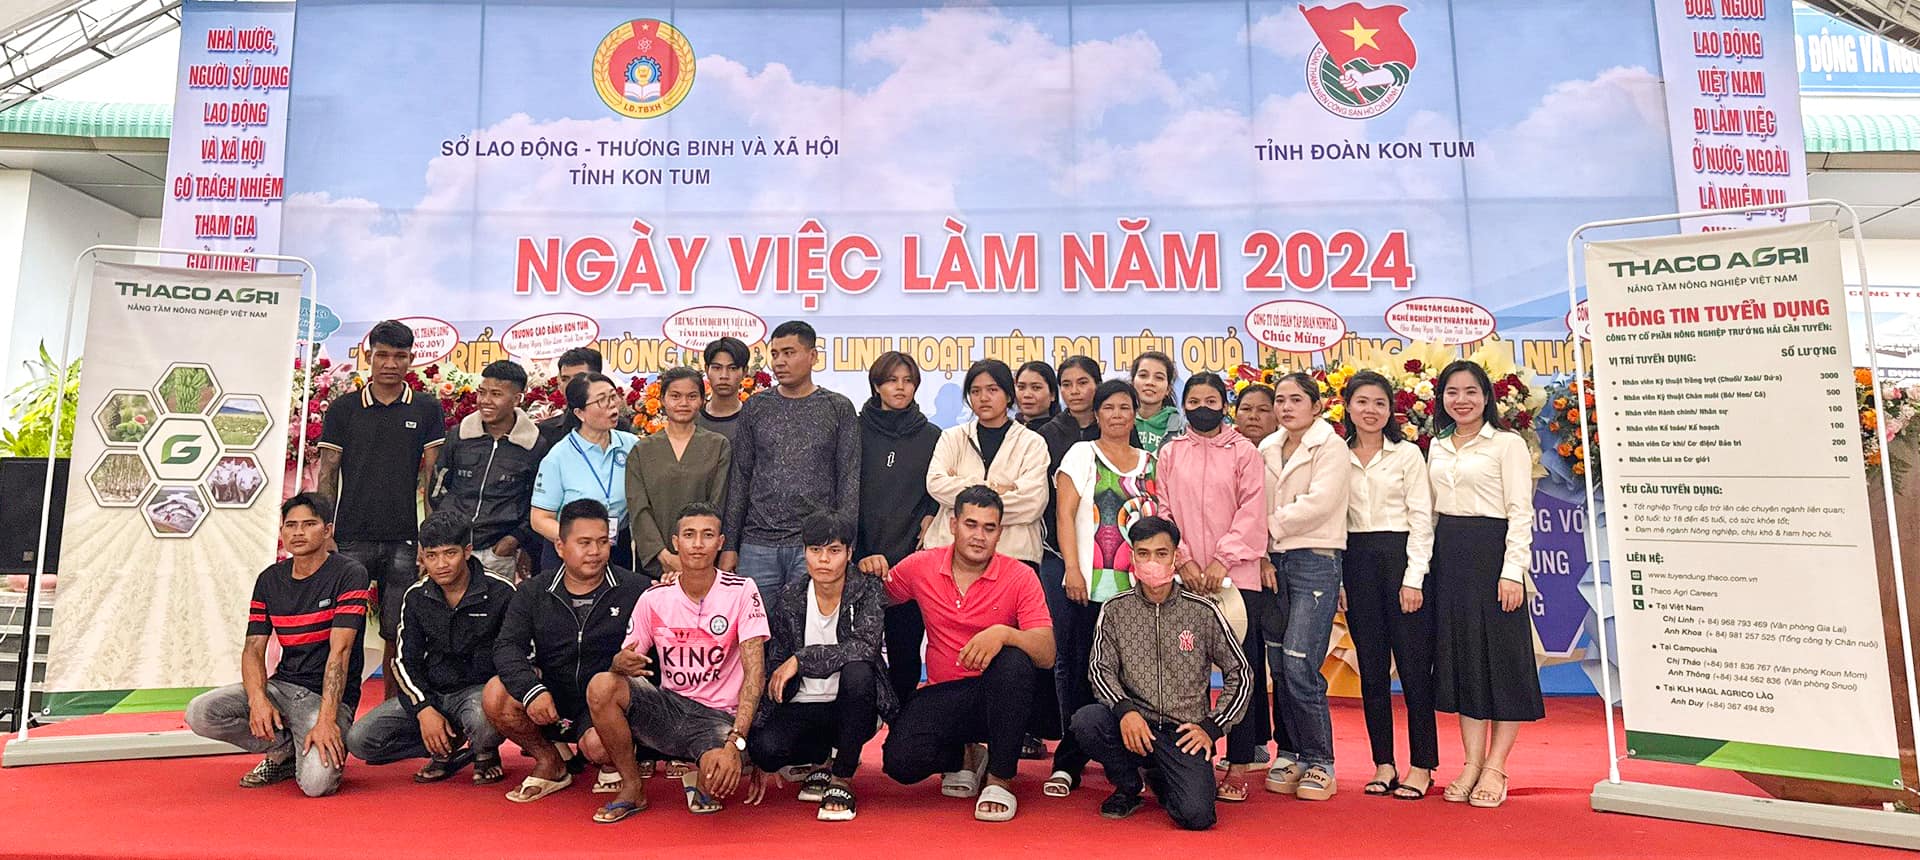 THACO AGRI đã tham gia chương trình Ngày việc làm năm 2024 tại Trung tâm Dịch vụ việc làm tỉnh Kon Tum